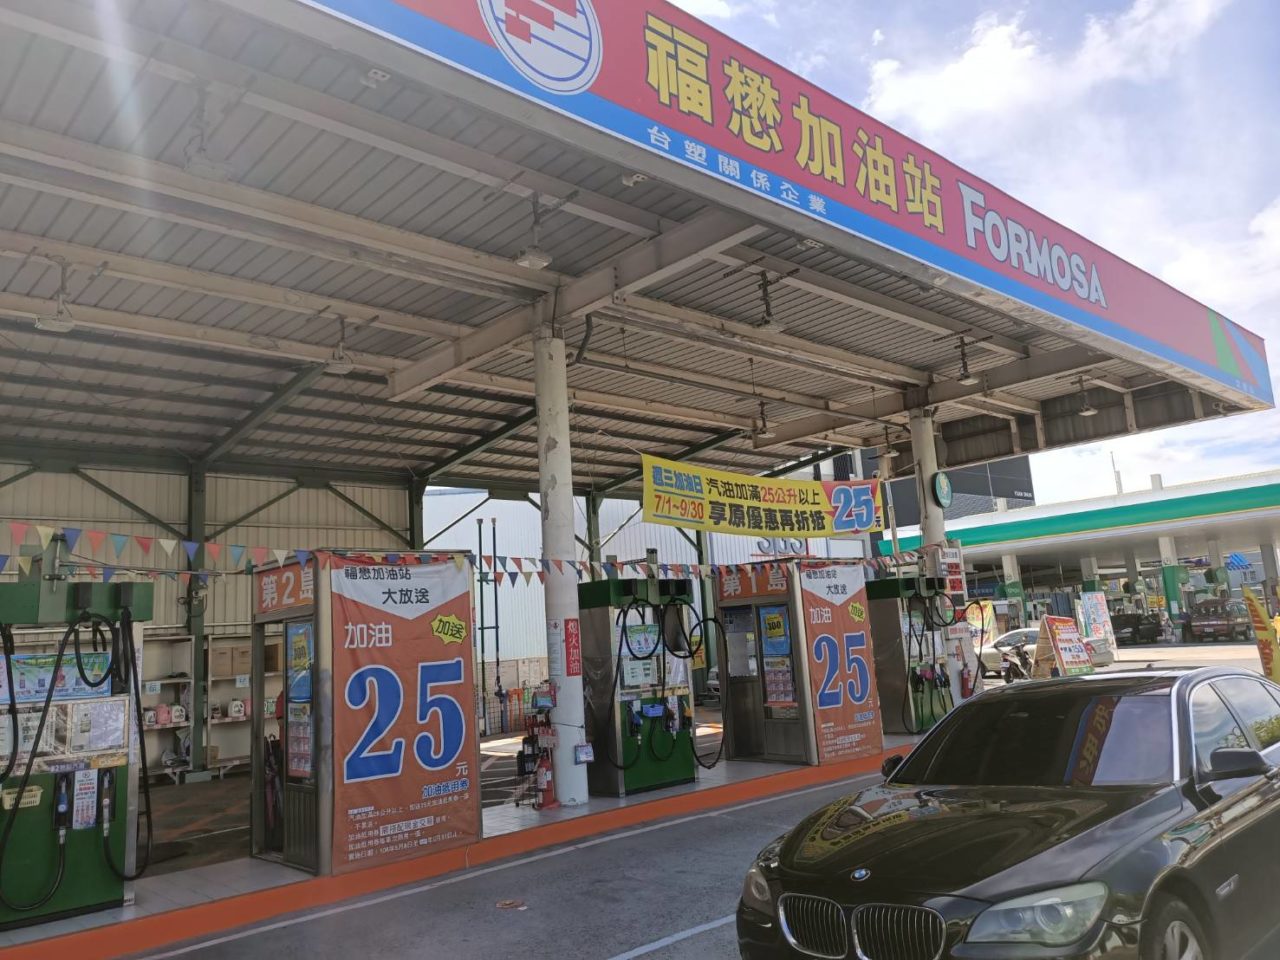  福懋加油站太子站 安裝警民連線系統